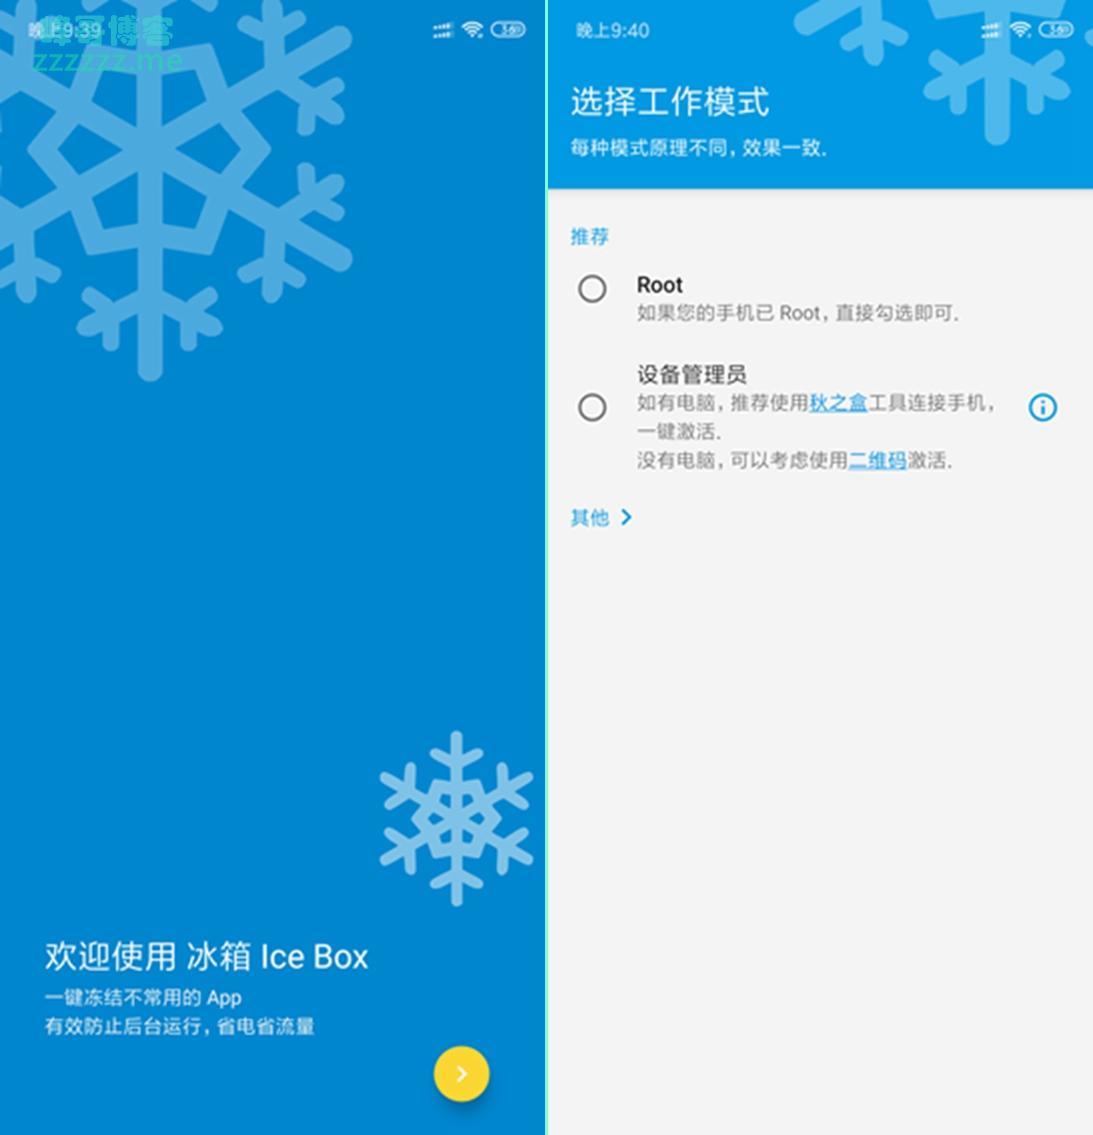 安卓冰箱Ice Box V3.10.0直装高级版专业中文破解版